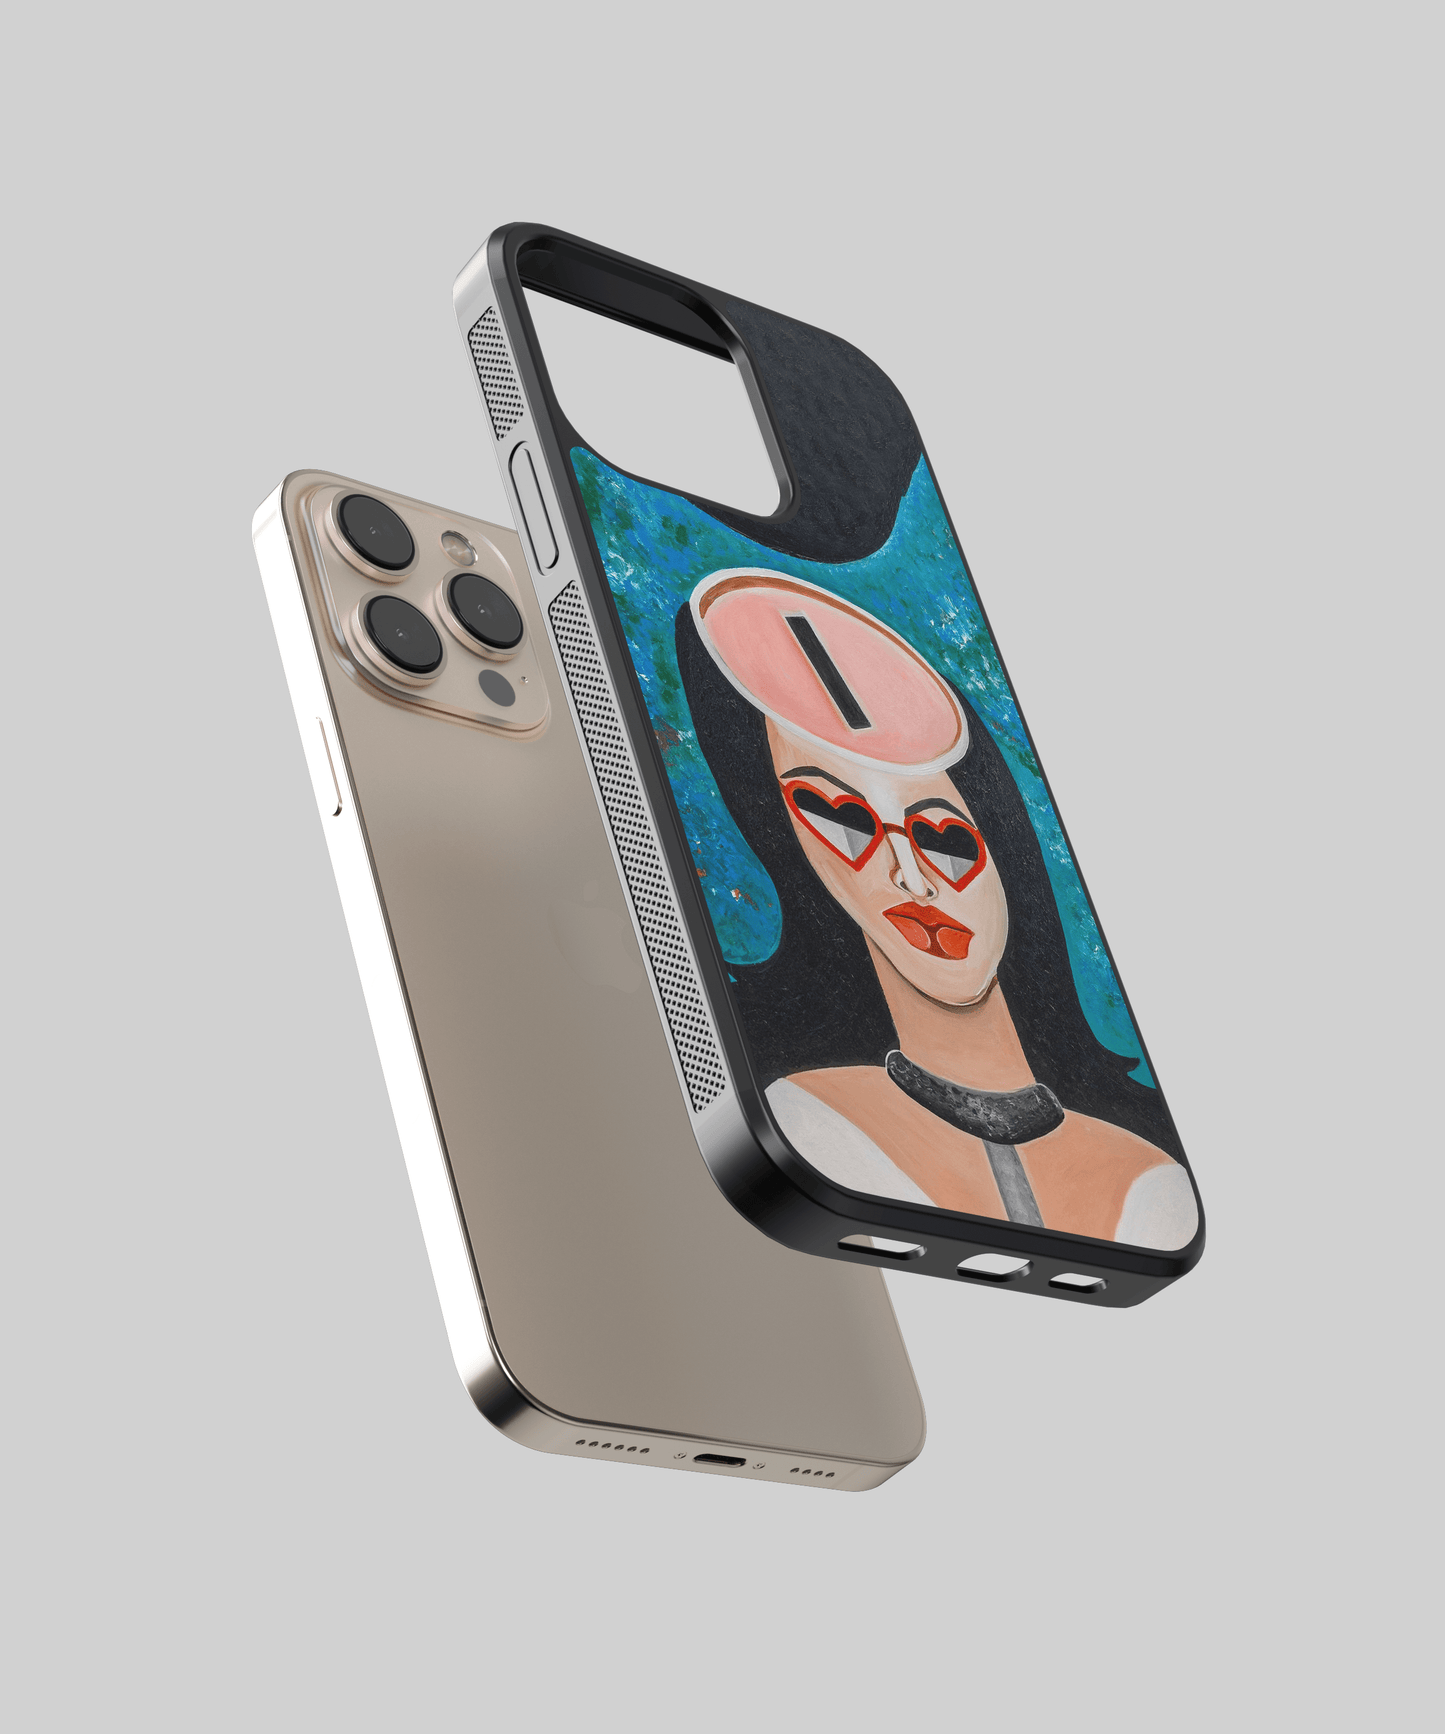 Materialiste - iPhone 6 plus / 6s plus phone case